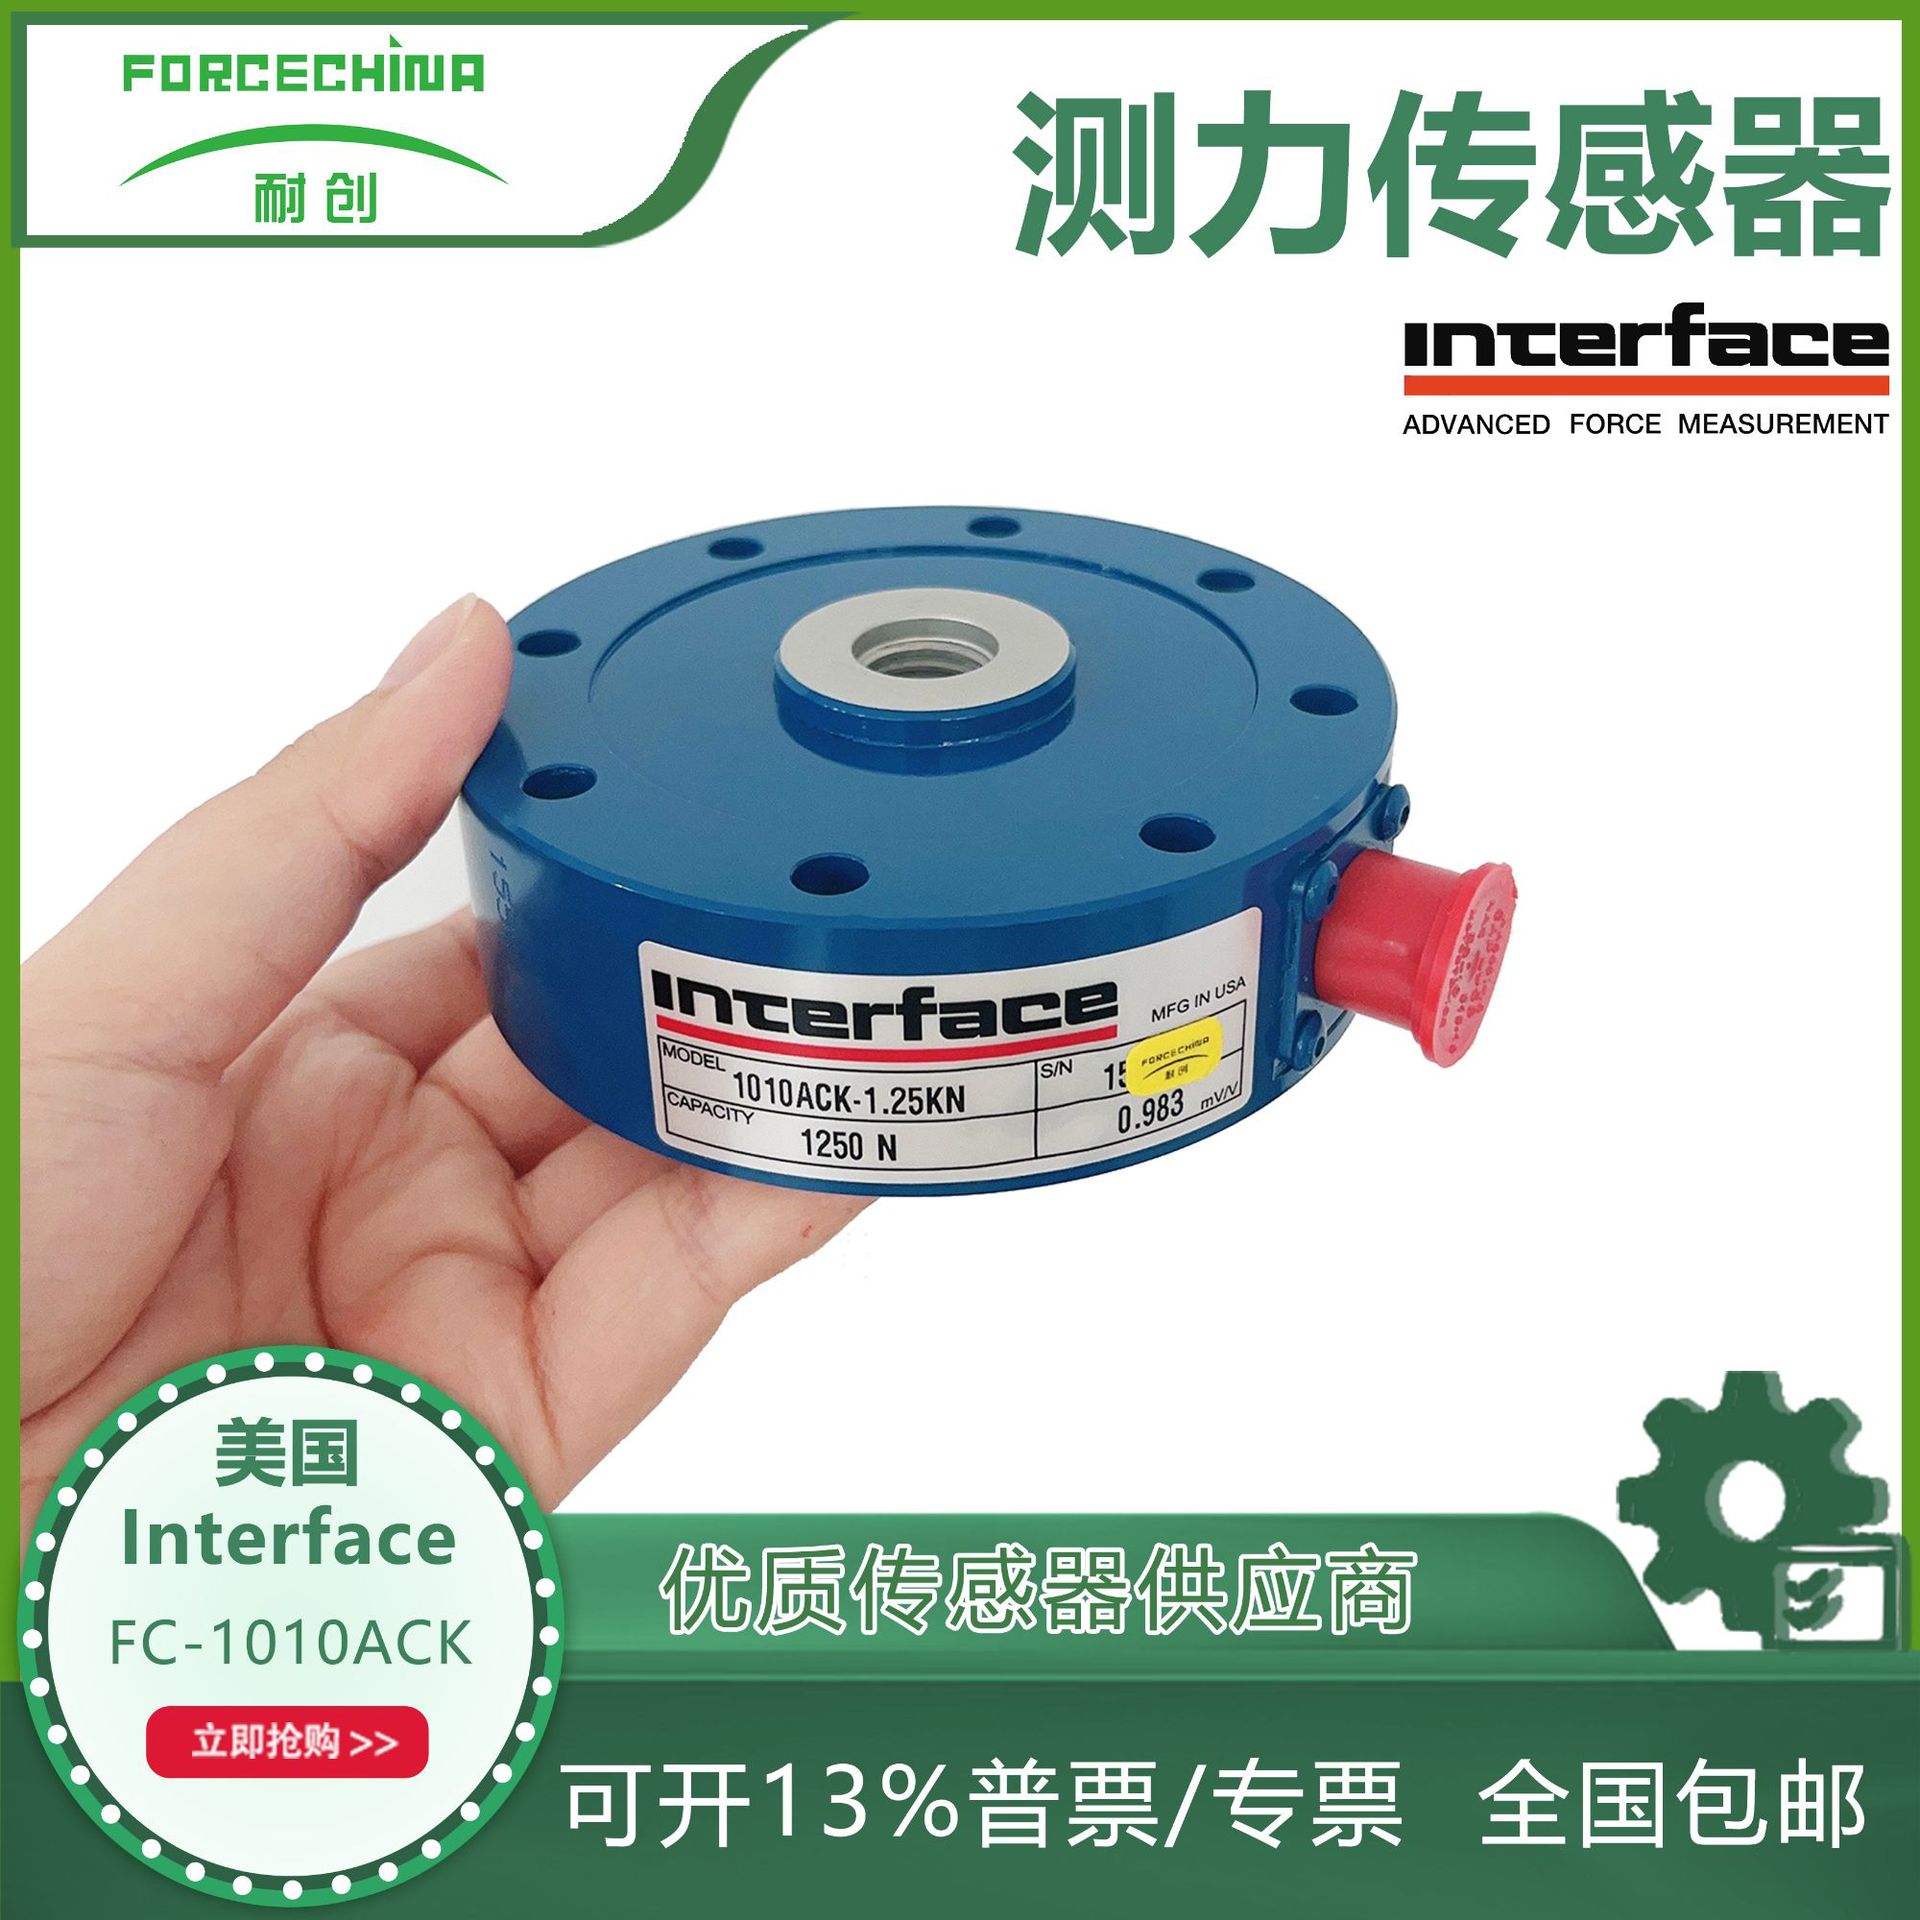 代理美国Interface高精度称重传感器FC-1010ACK-1.25KN